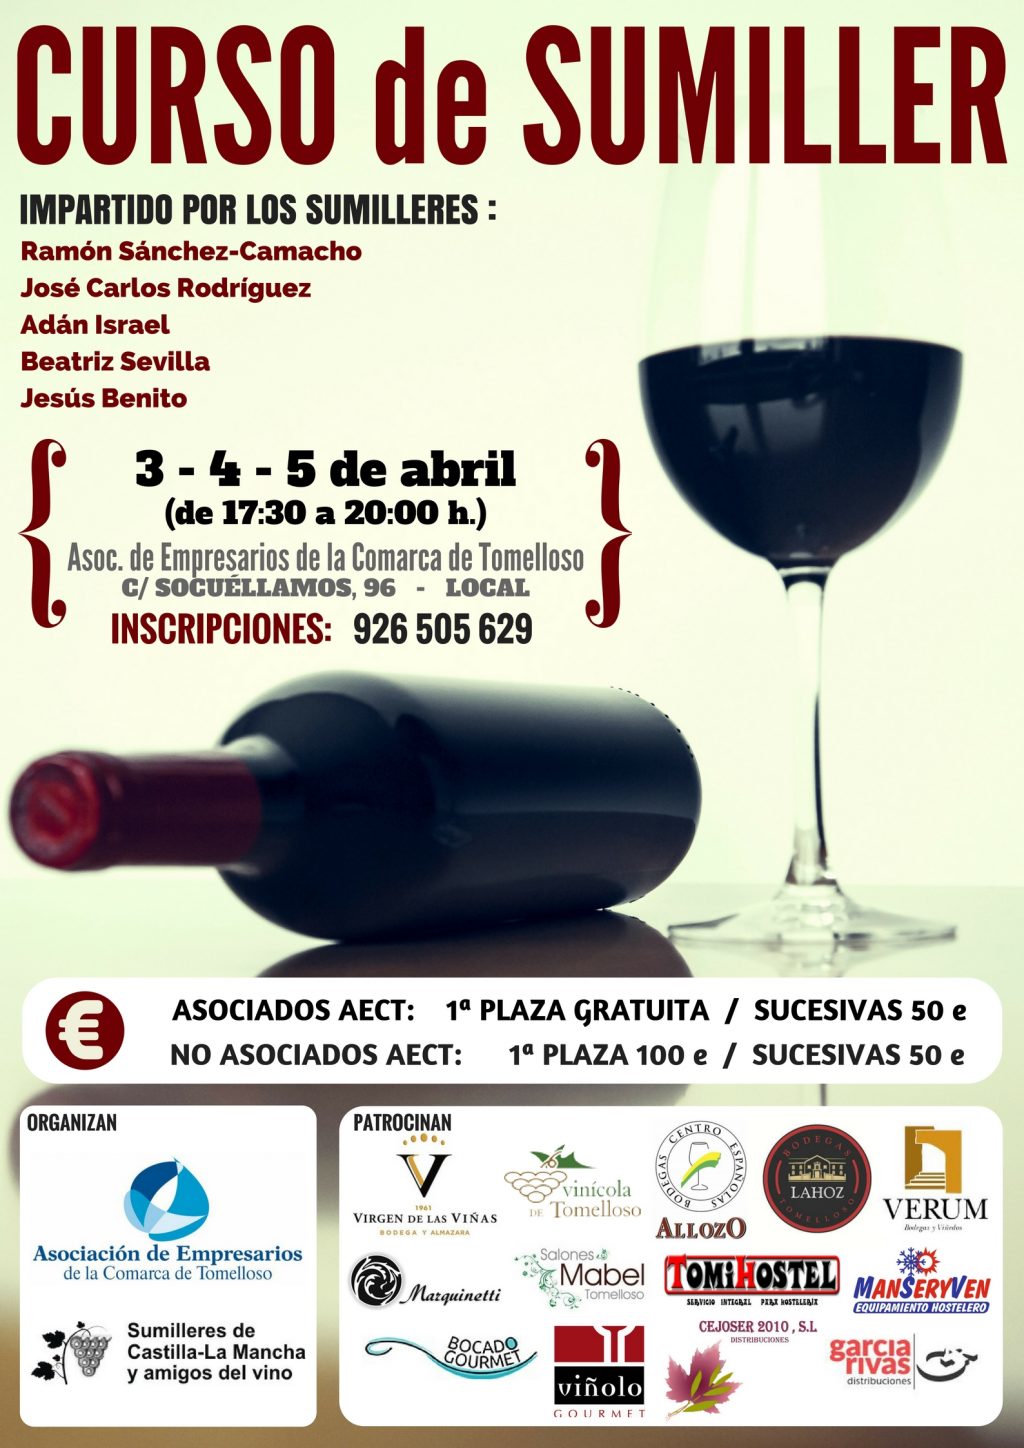 AECT y la Asociación de Sumilleres de Castilla-La Mancha y Amigos del Vino imparten en Tomelloso un curso de sumiller